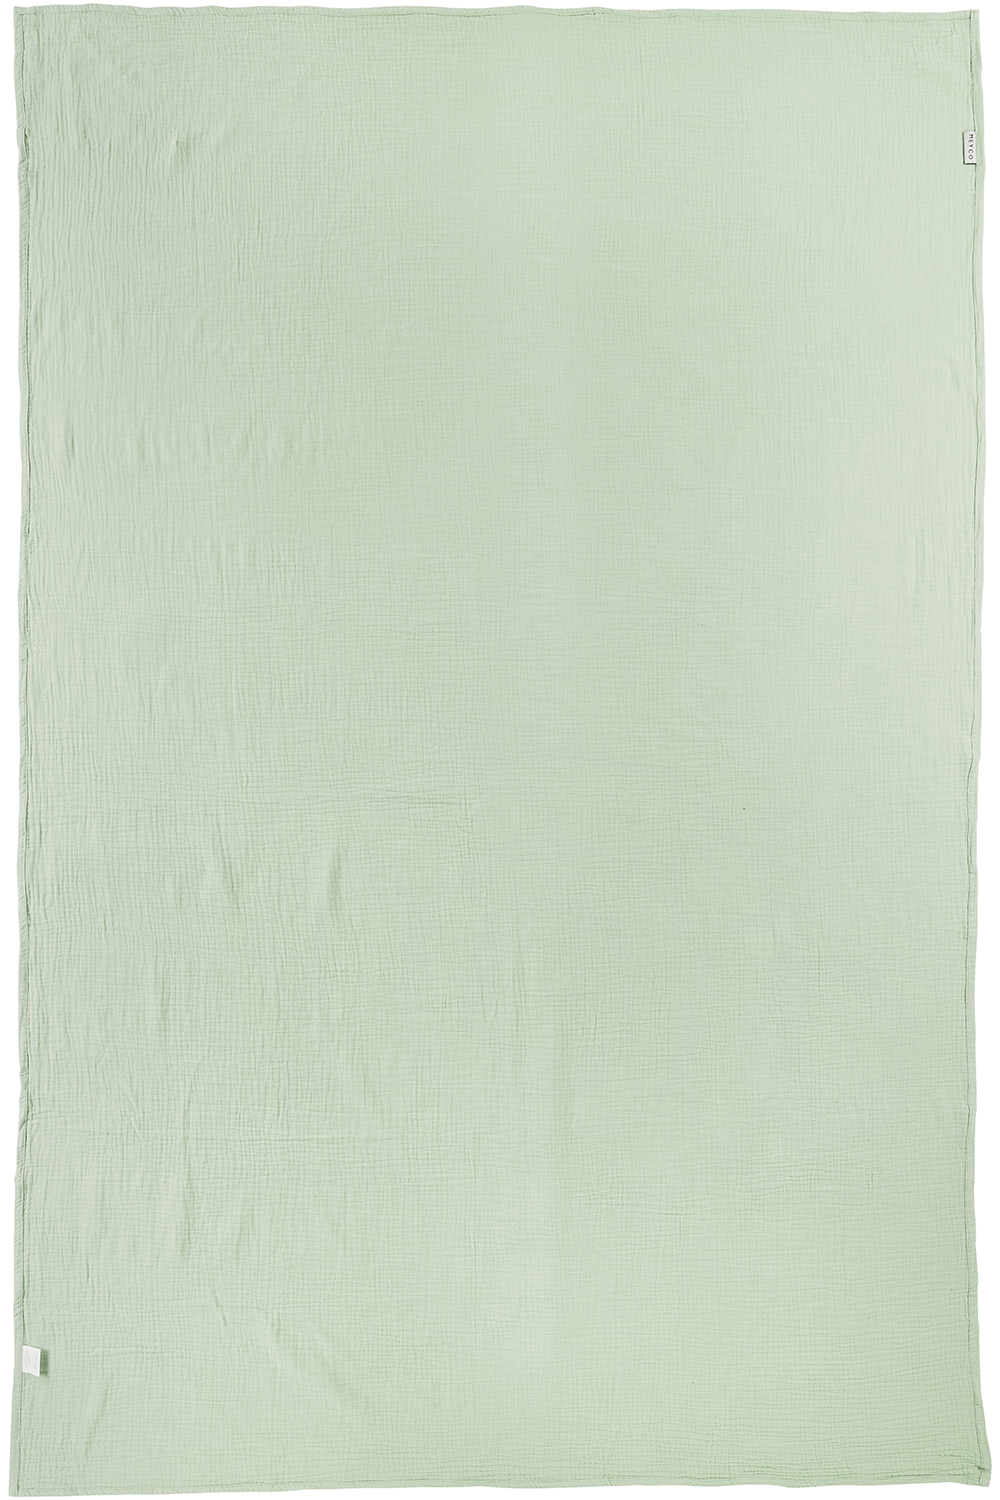 Deken pre-washed hydrofiel Uni - soft green - 140x200cm